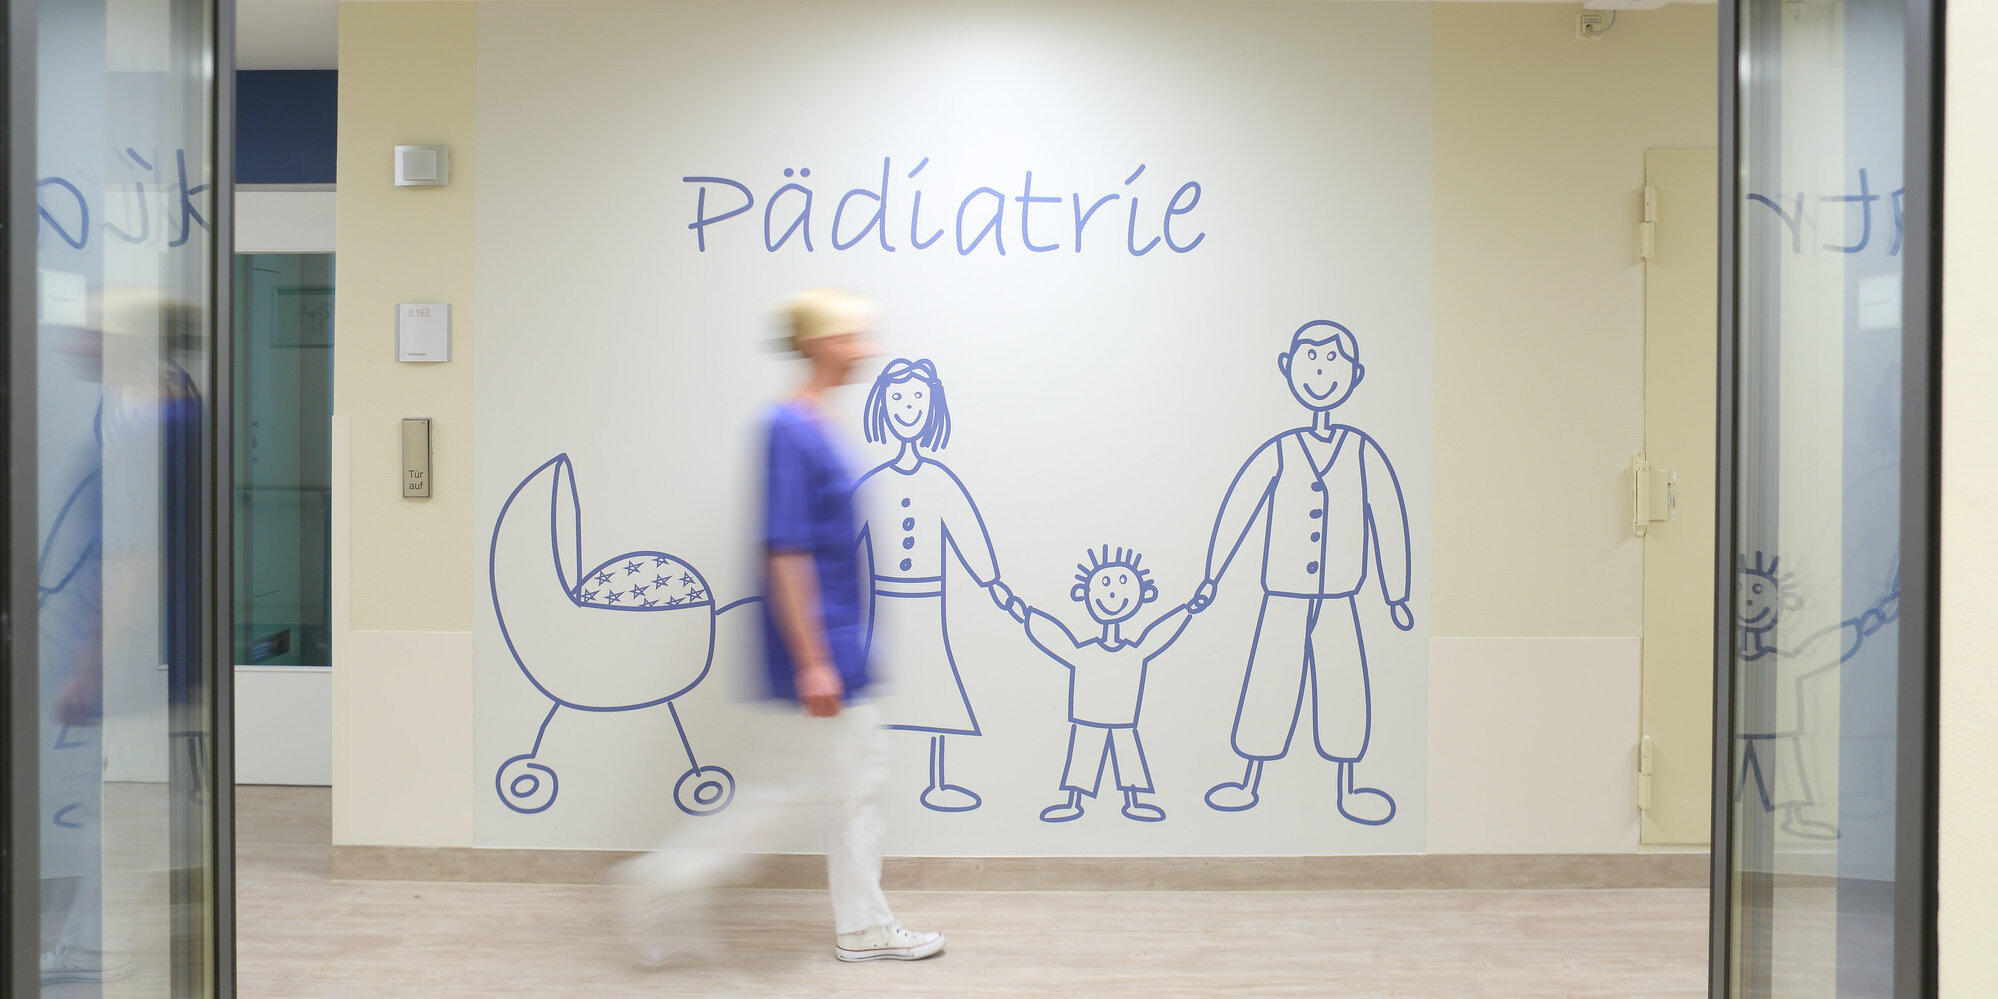 Pflegerin vor einer Wand mit der Aufschrift "Pädiatrie" und gezeichneter Familie.